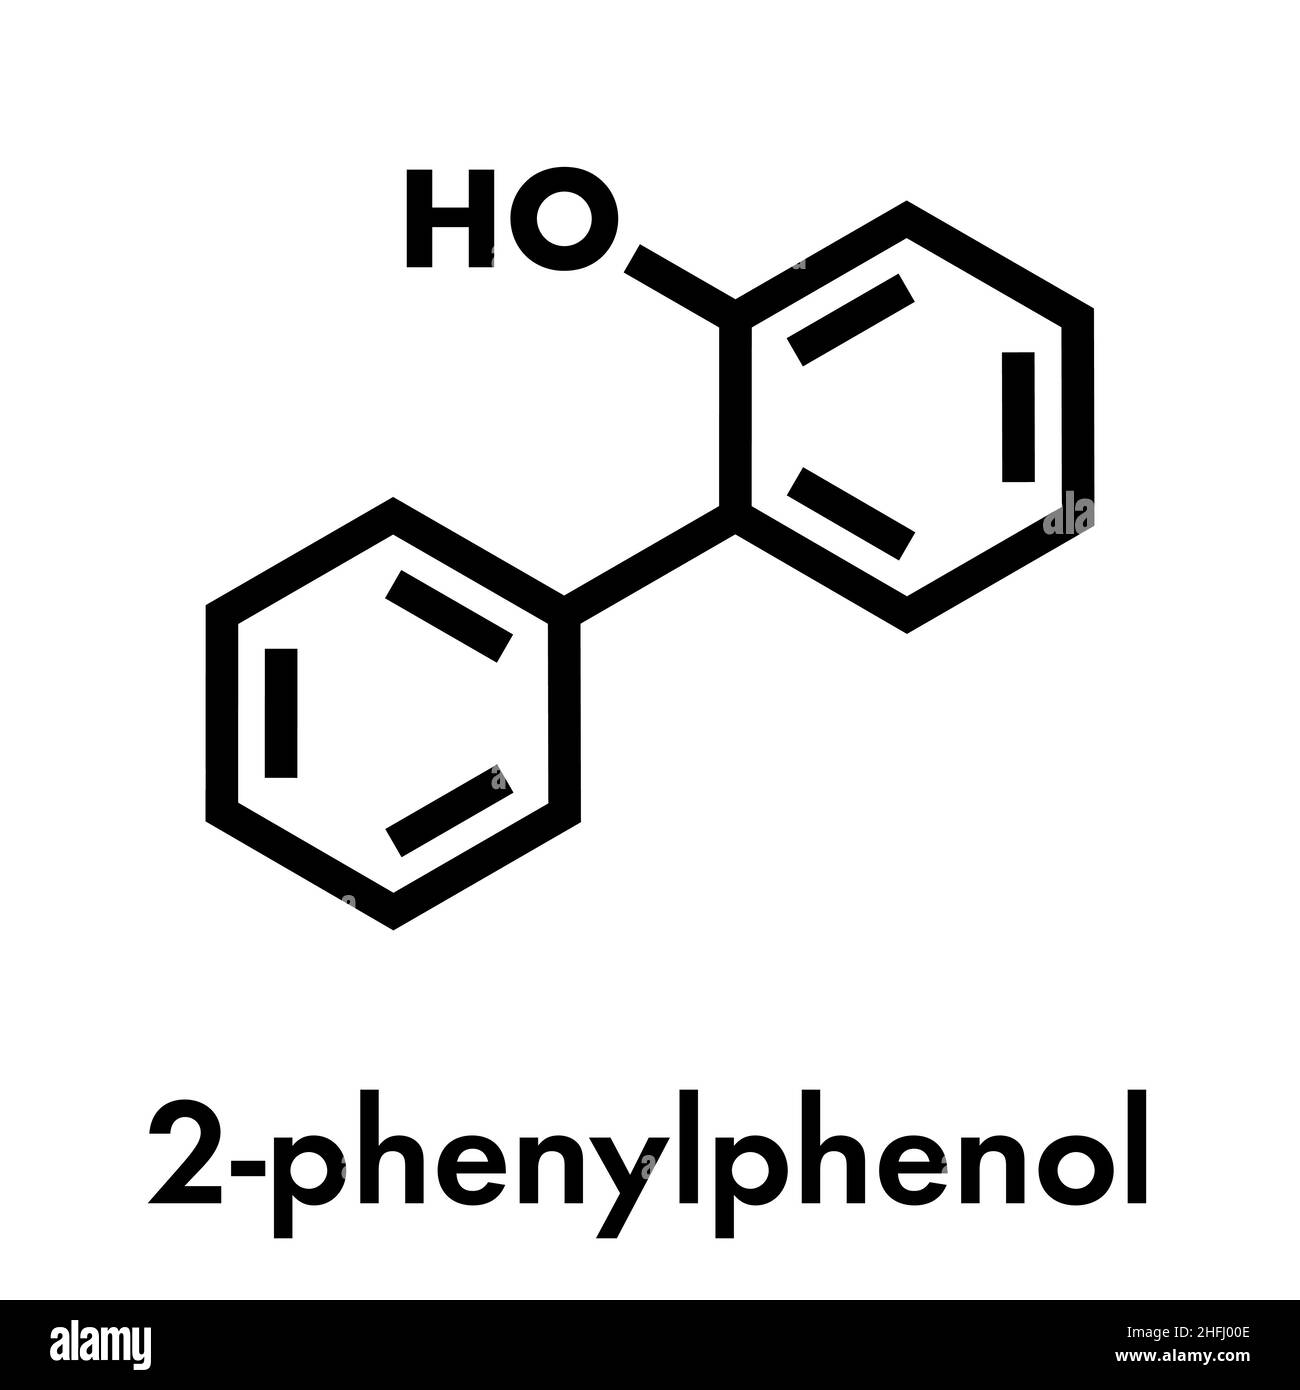 2-phenylphenol Konservierungsmittel Molekül. Biozid verwendet als Lebensmittelzusatzstoff, Konservierungsmittel, und Desinfektionsmittel. Skelettmuskulatur Formel. Stock Vektor